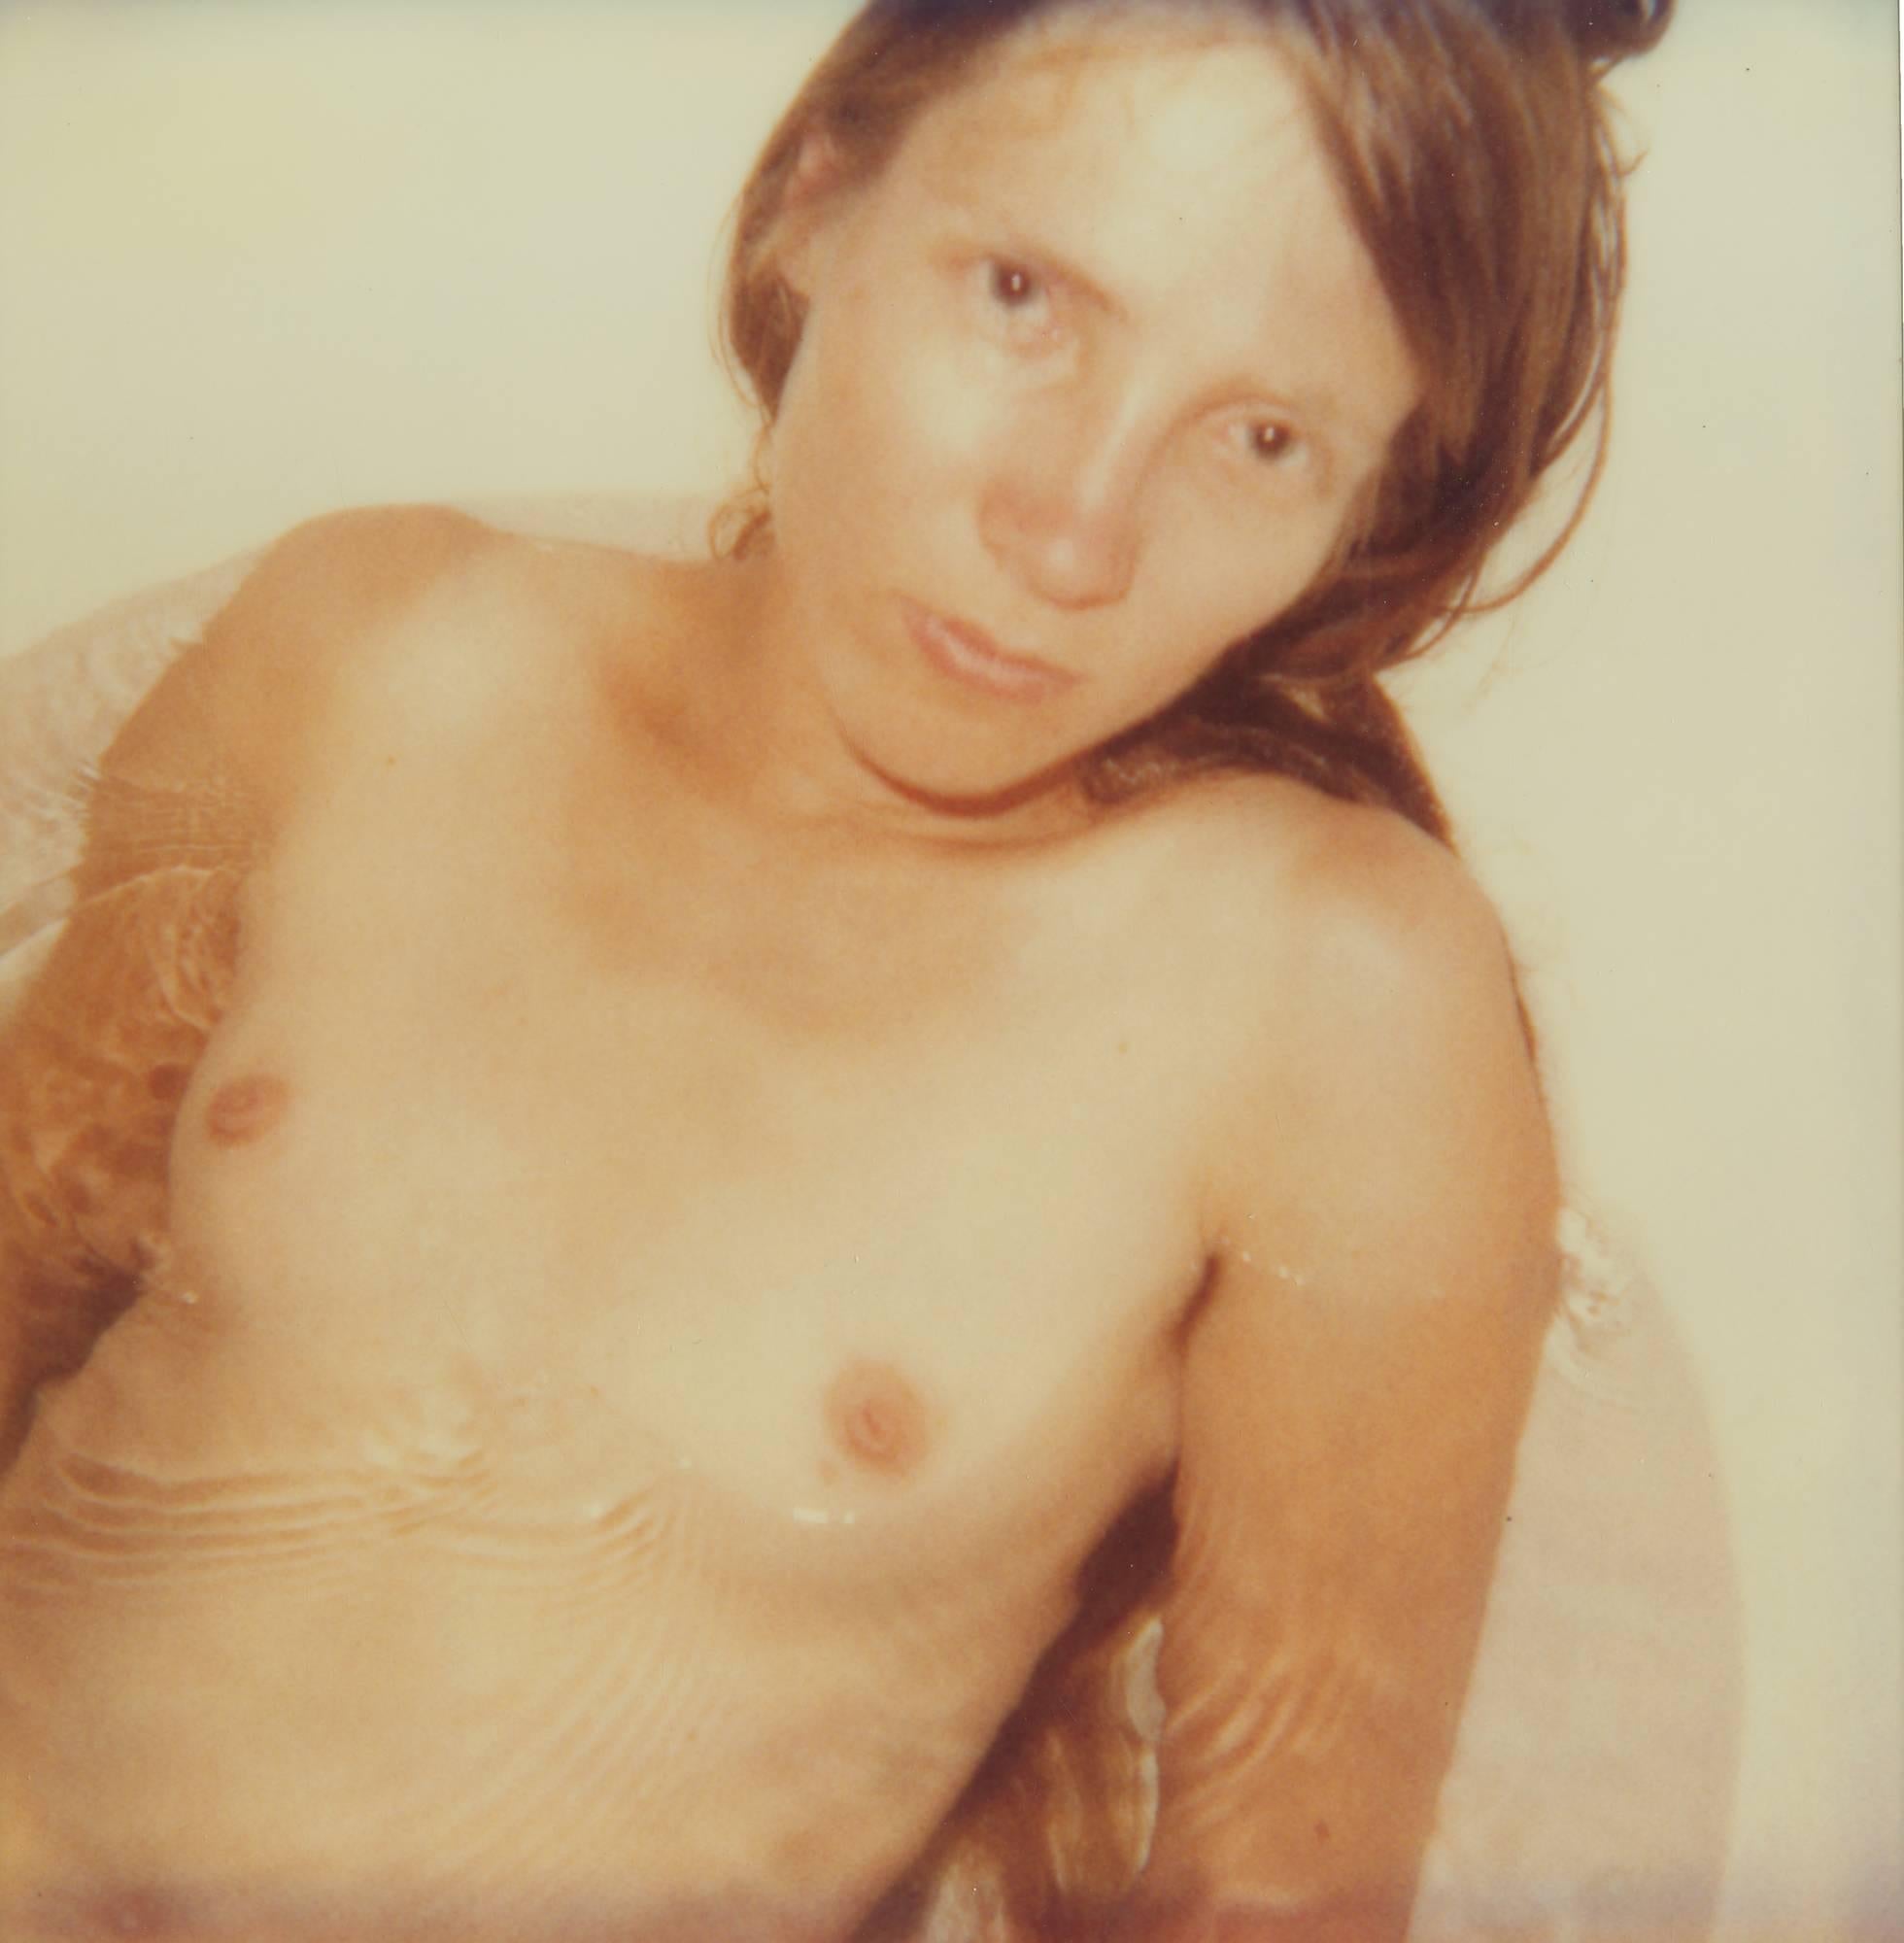 Stefanie Schneider Portrait Photograph - Stevie in Bathtub (29 Palms, CA)